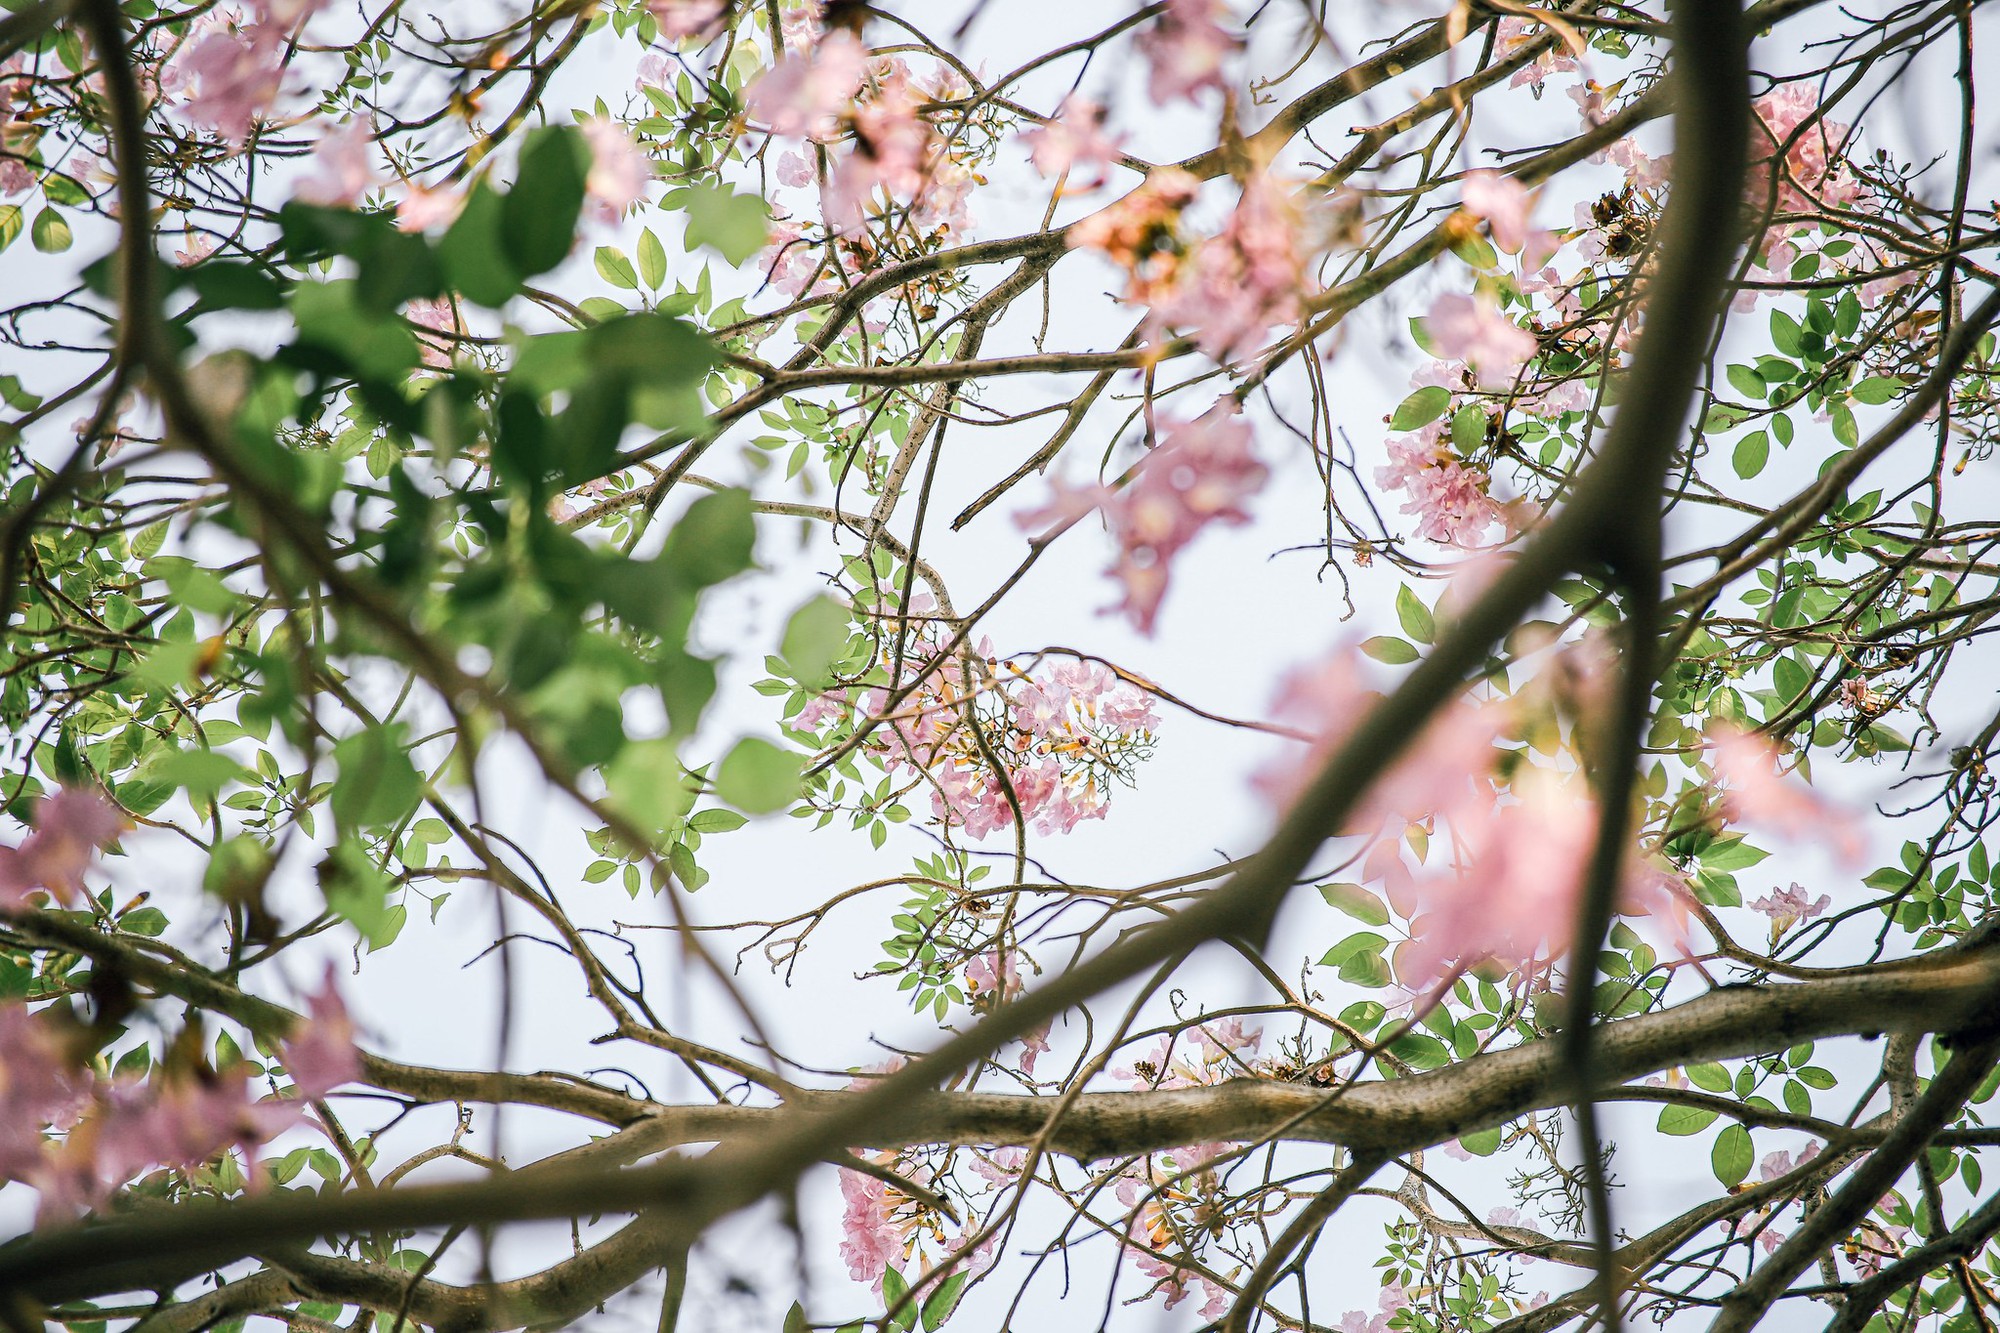 Mùa kèn hồng rợp trời Sài Gòn, chợt thấy thành phố mộng mơ biết bao giữa sắc hoa rực rỡ- Ảnh 4.